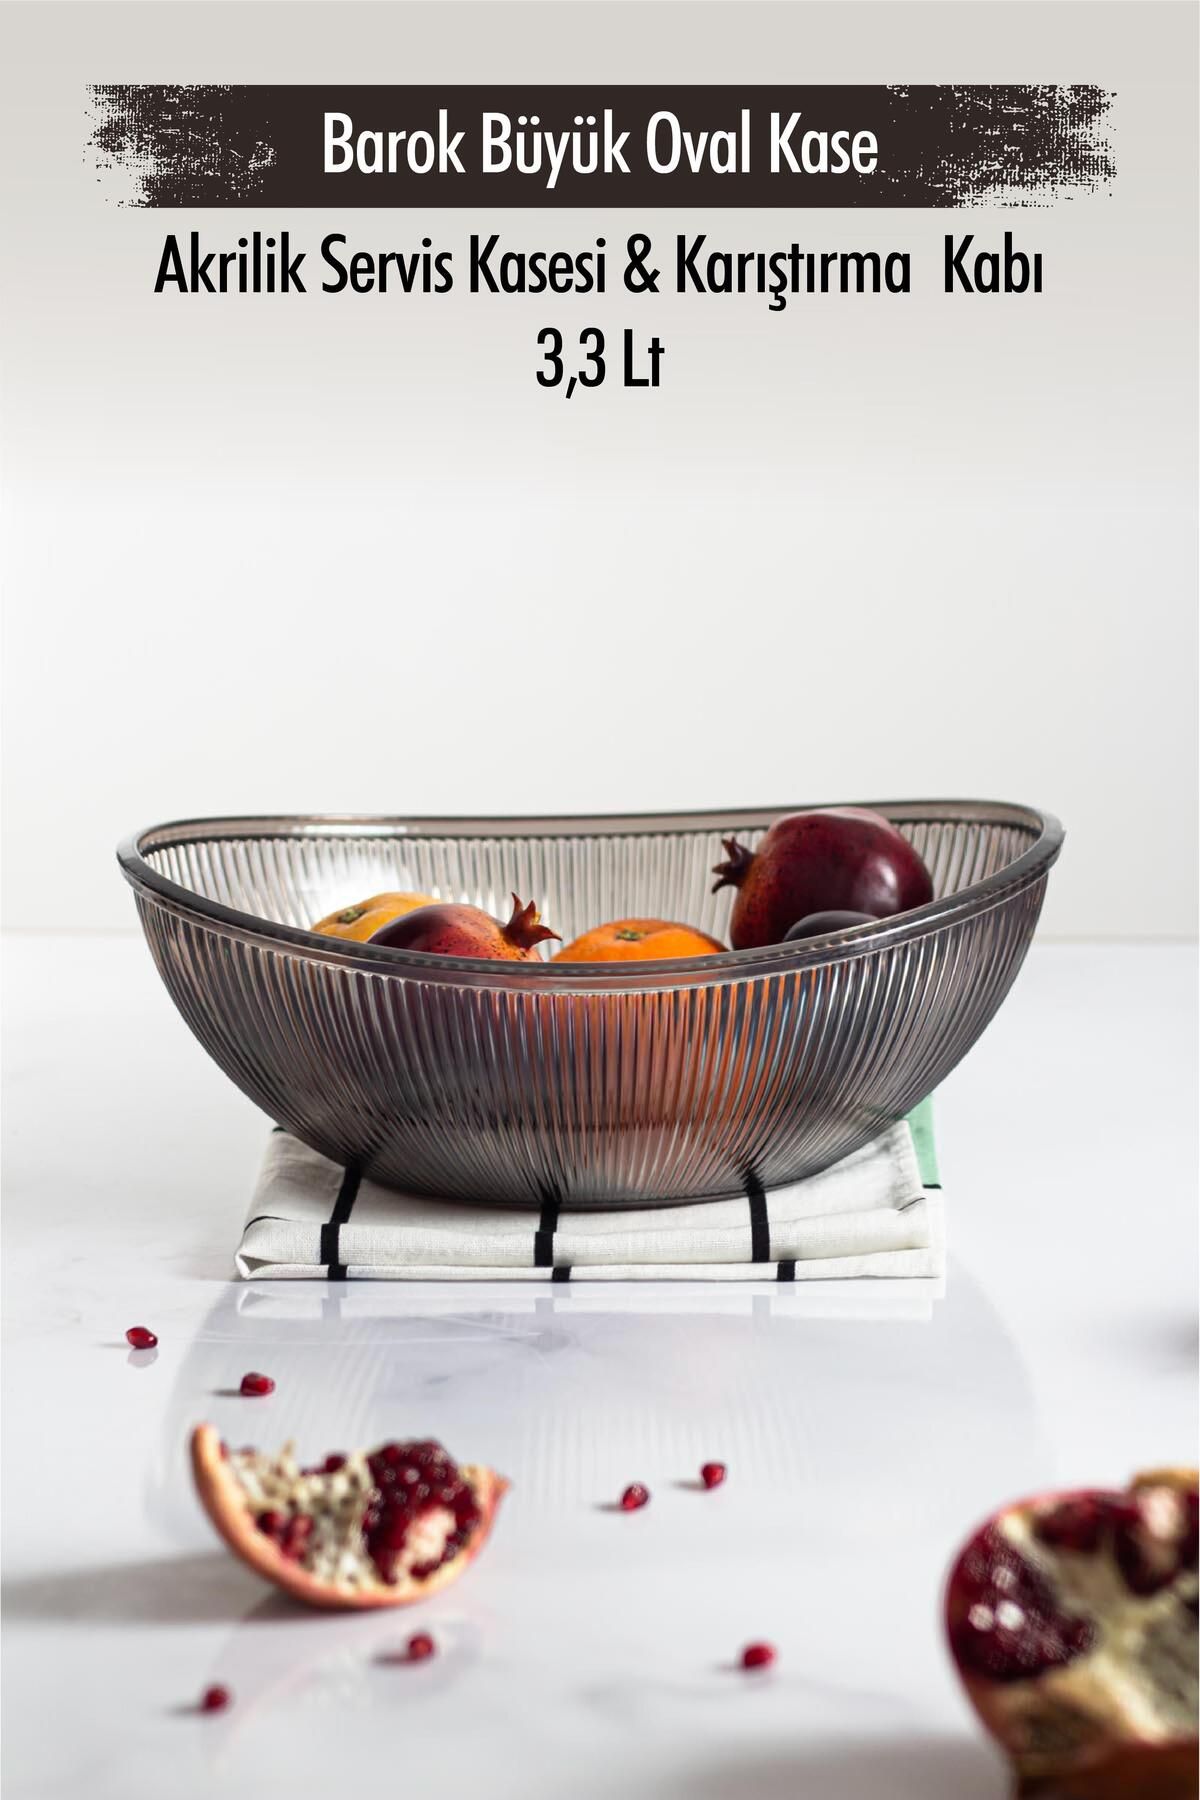 EWs Akrilik Barok Füme Büyük Oval Meyve & Salata Kasesi & Karıştırma Kabı / 3,3 Lt  (CAM DEĞİLDİR)